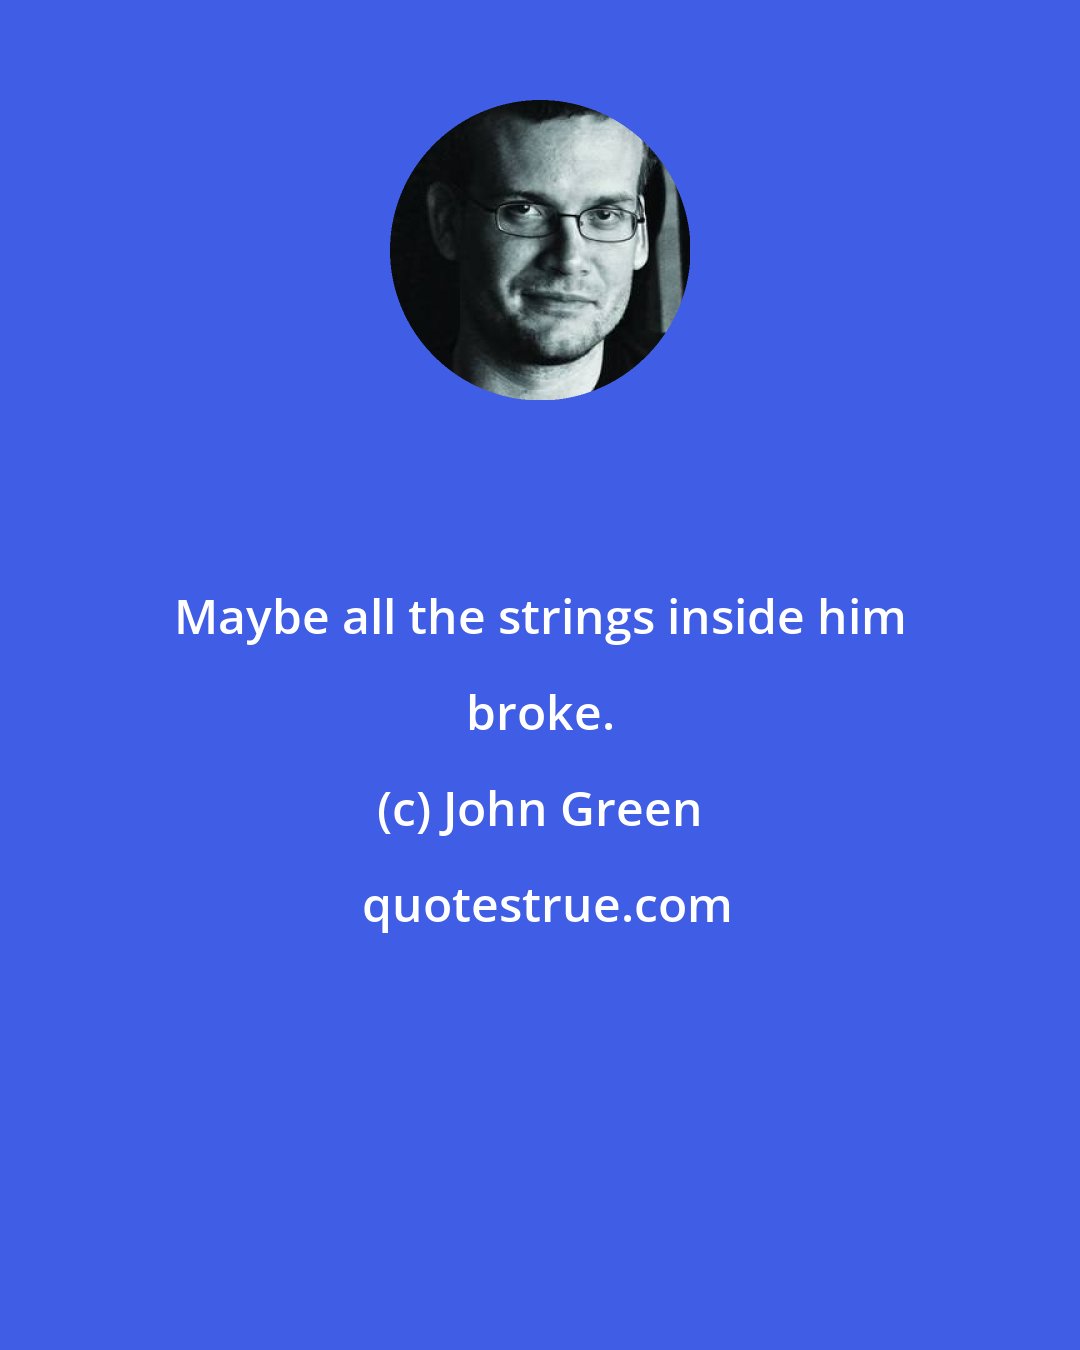 John Green: Maybe all the strings inside him broke.